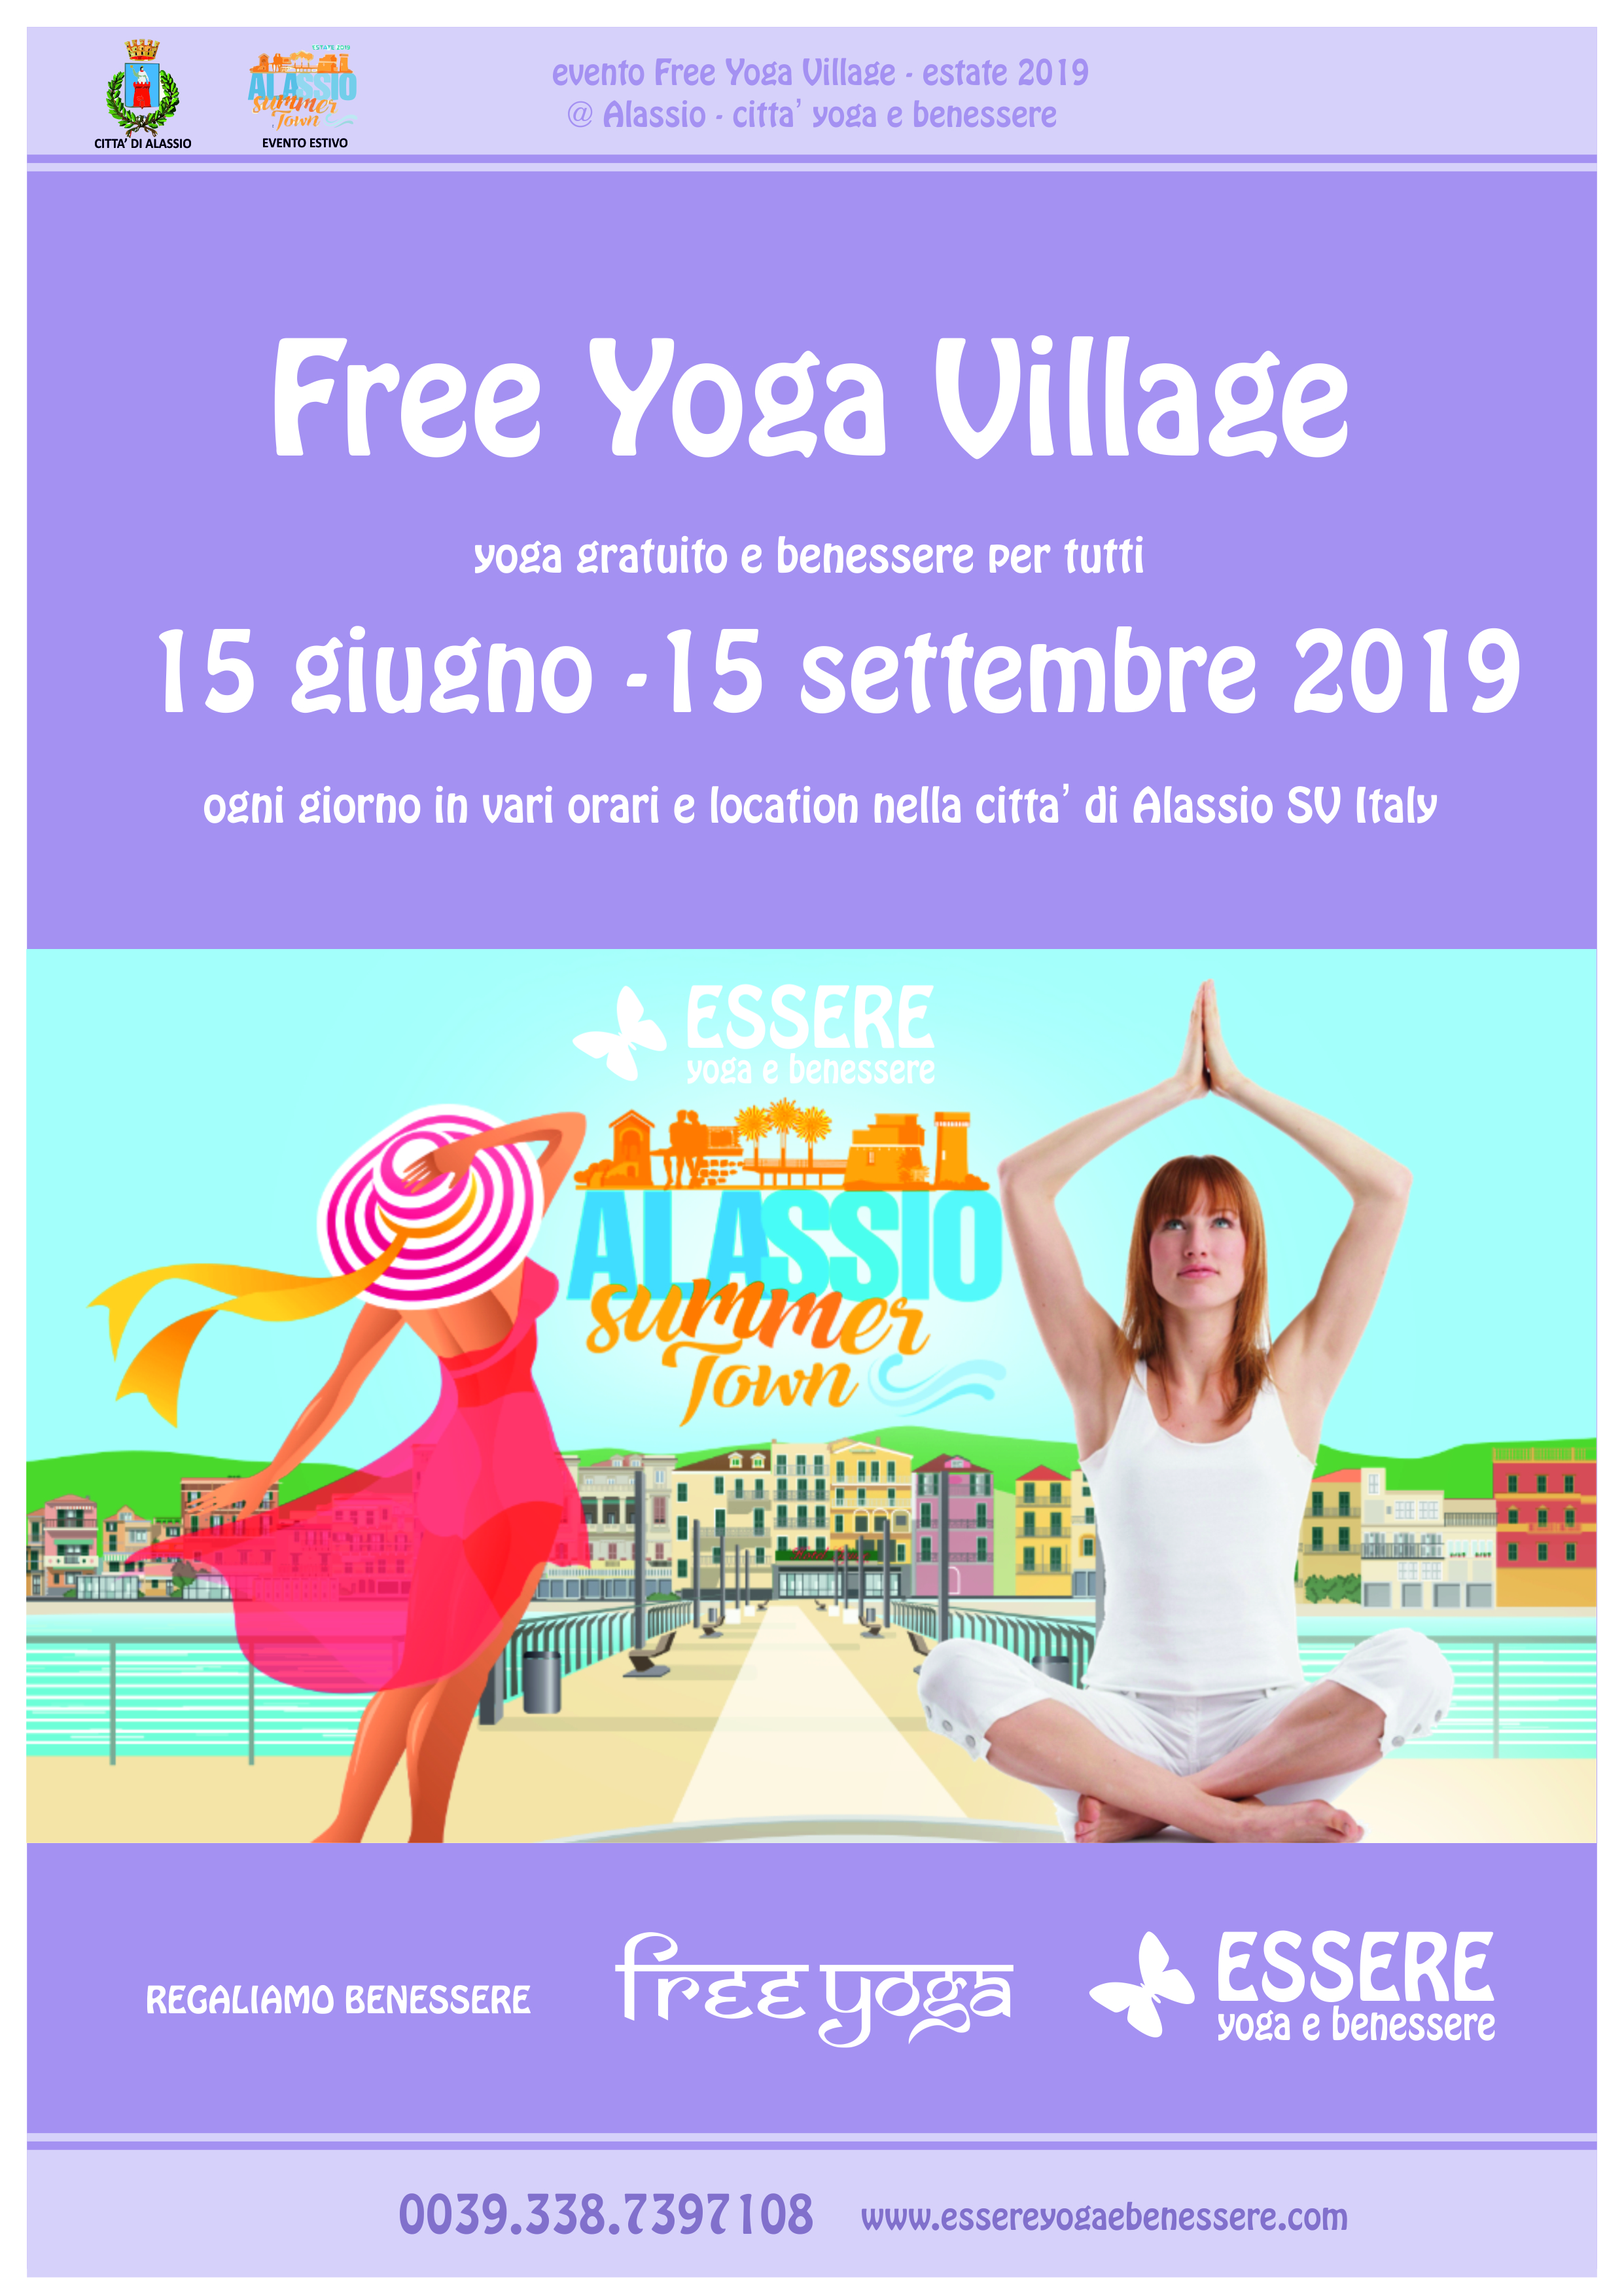 essere-free-yoga-gratuito-benessere-per-tutti-village-citta-alassio-estate-lucia-ragazzi-marcella-fiore-summer-town-wellness